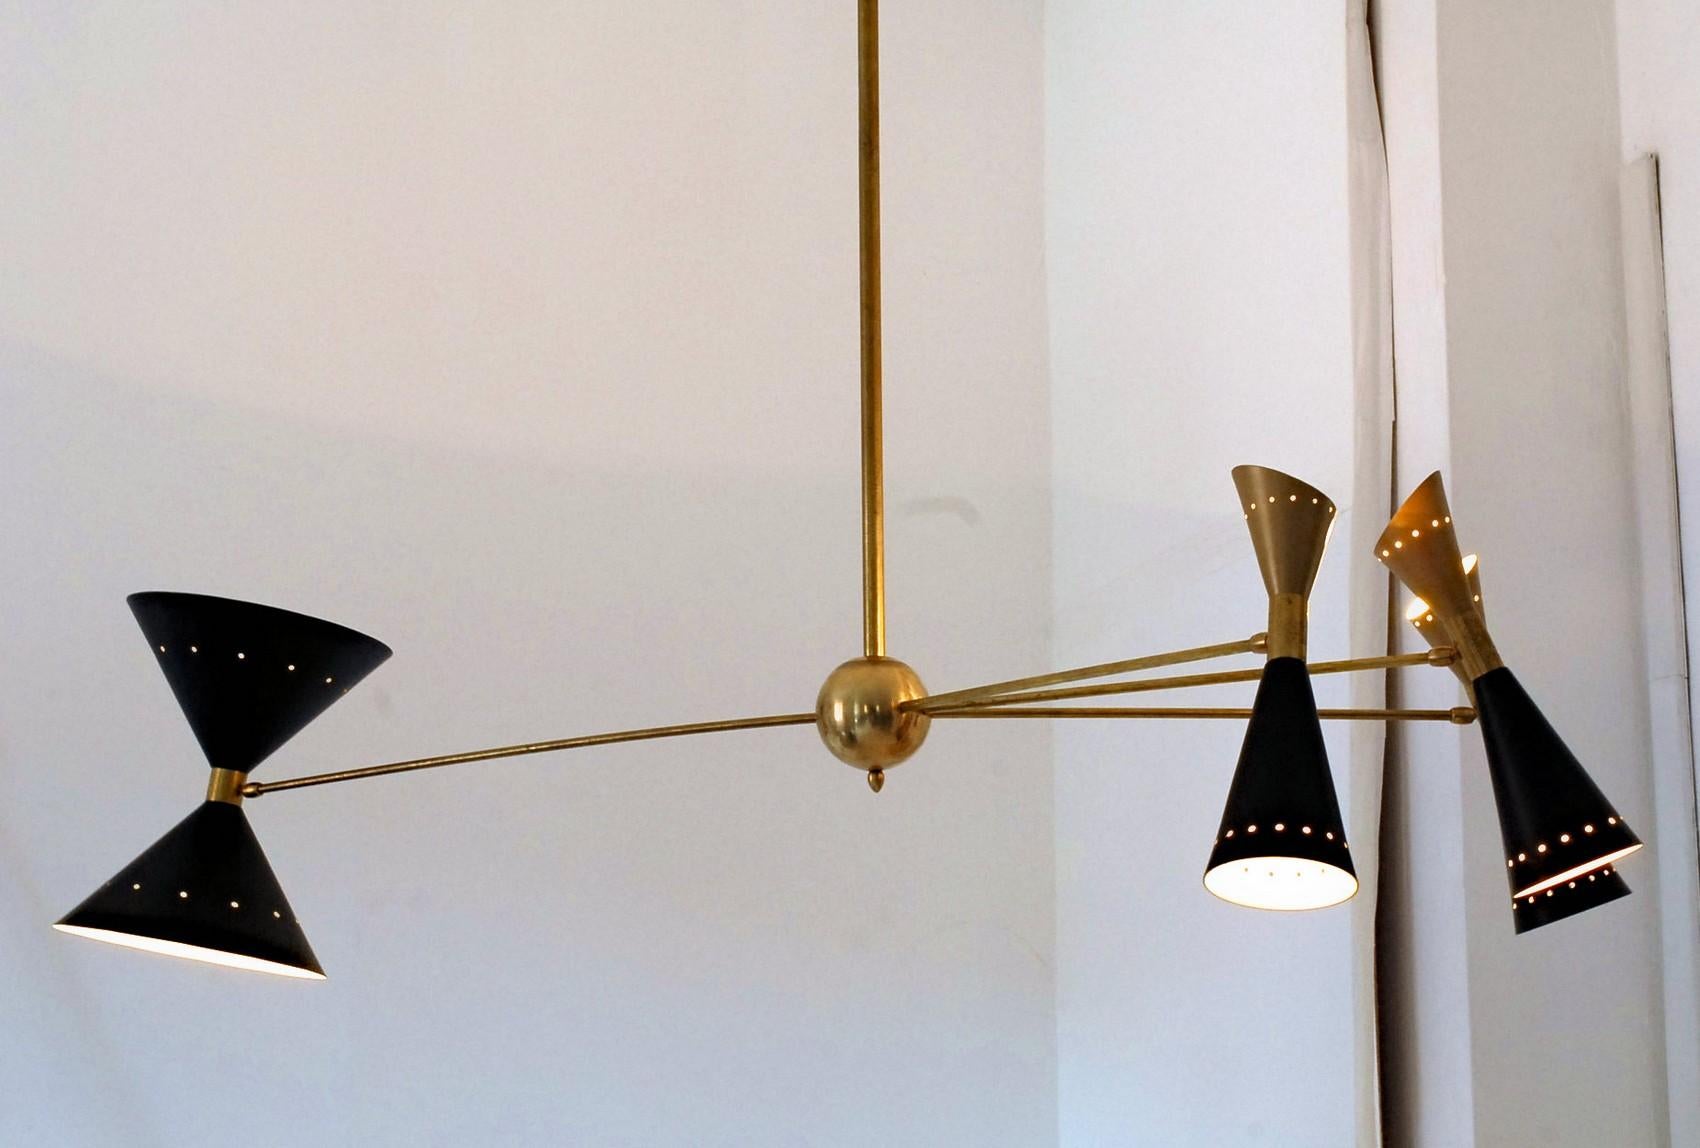 asymmetrical chandeliers